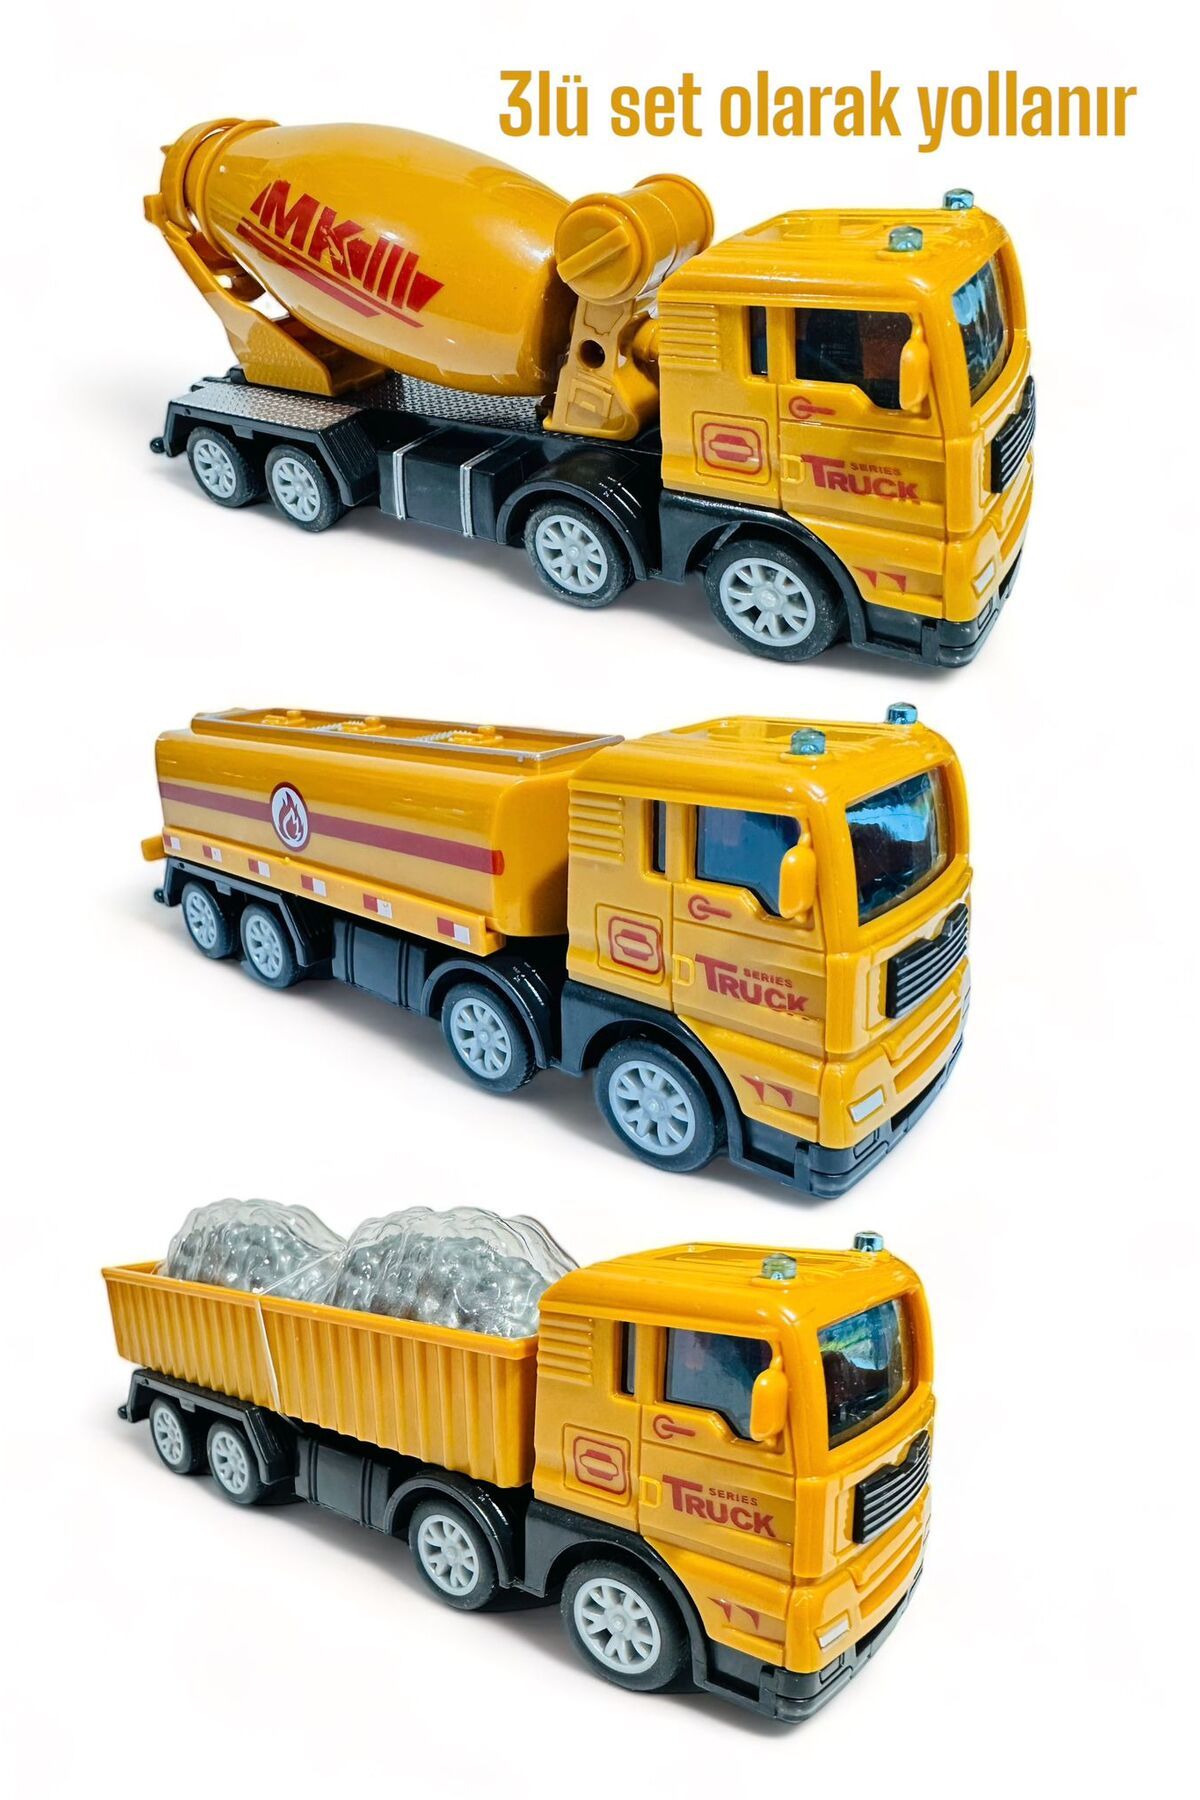 tmtoysandmore inşaat beton mikseri kum kamyonu su kamyonu 3lü kırılmaz oyuncak